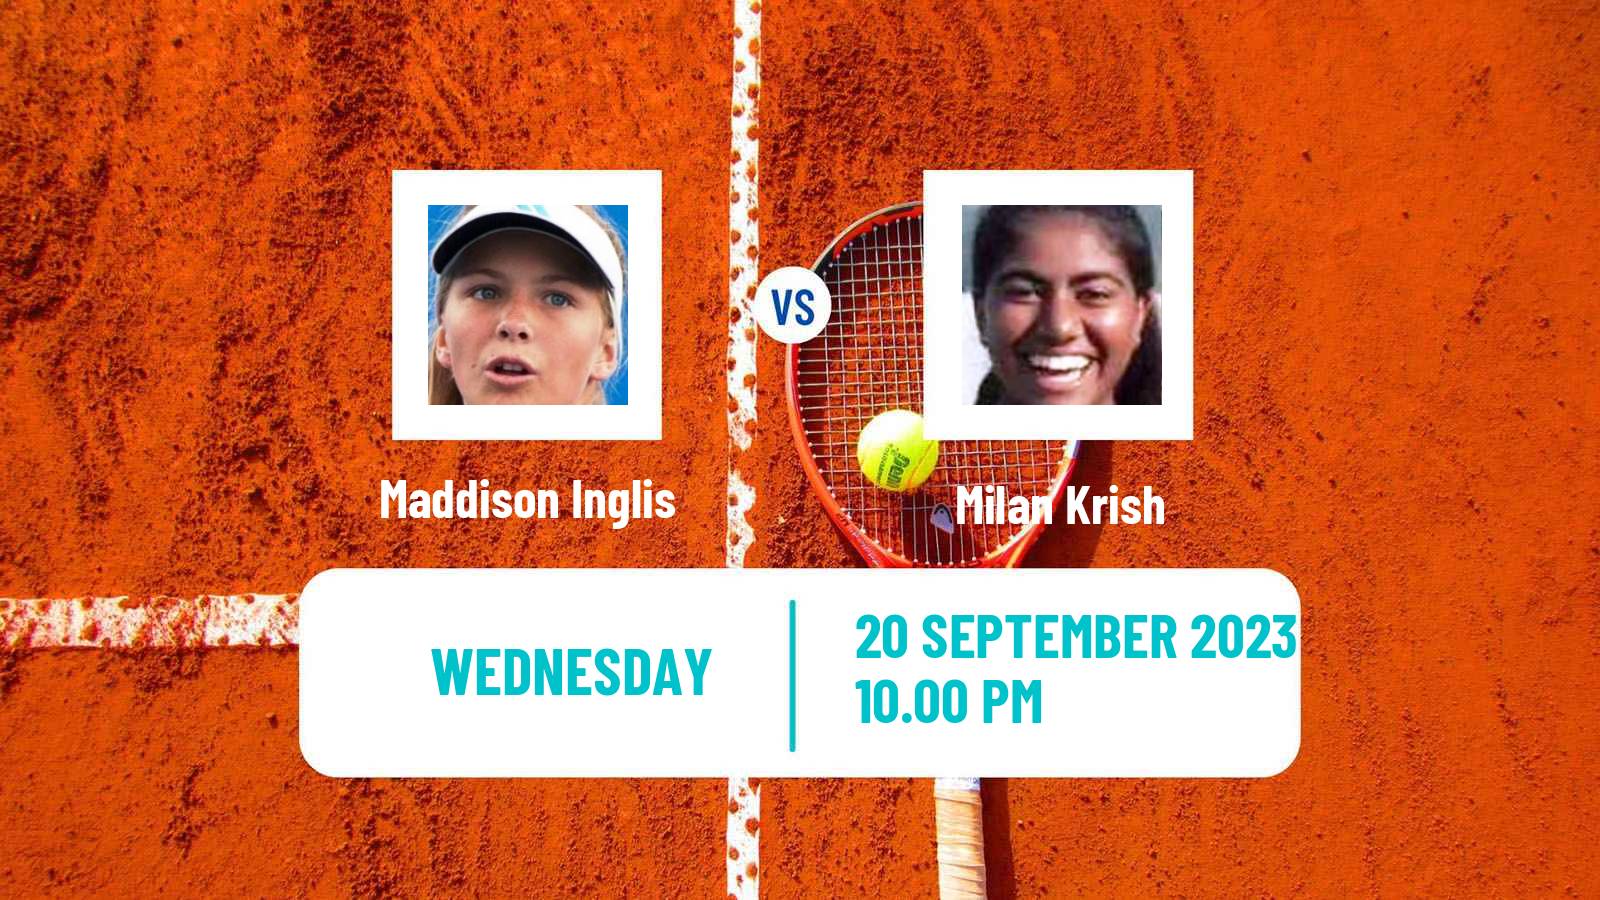 Tennis ITF W25 Perth 2 Women Maddison Inglis - Milan Krish